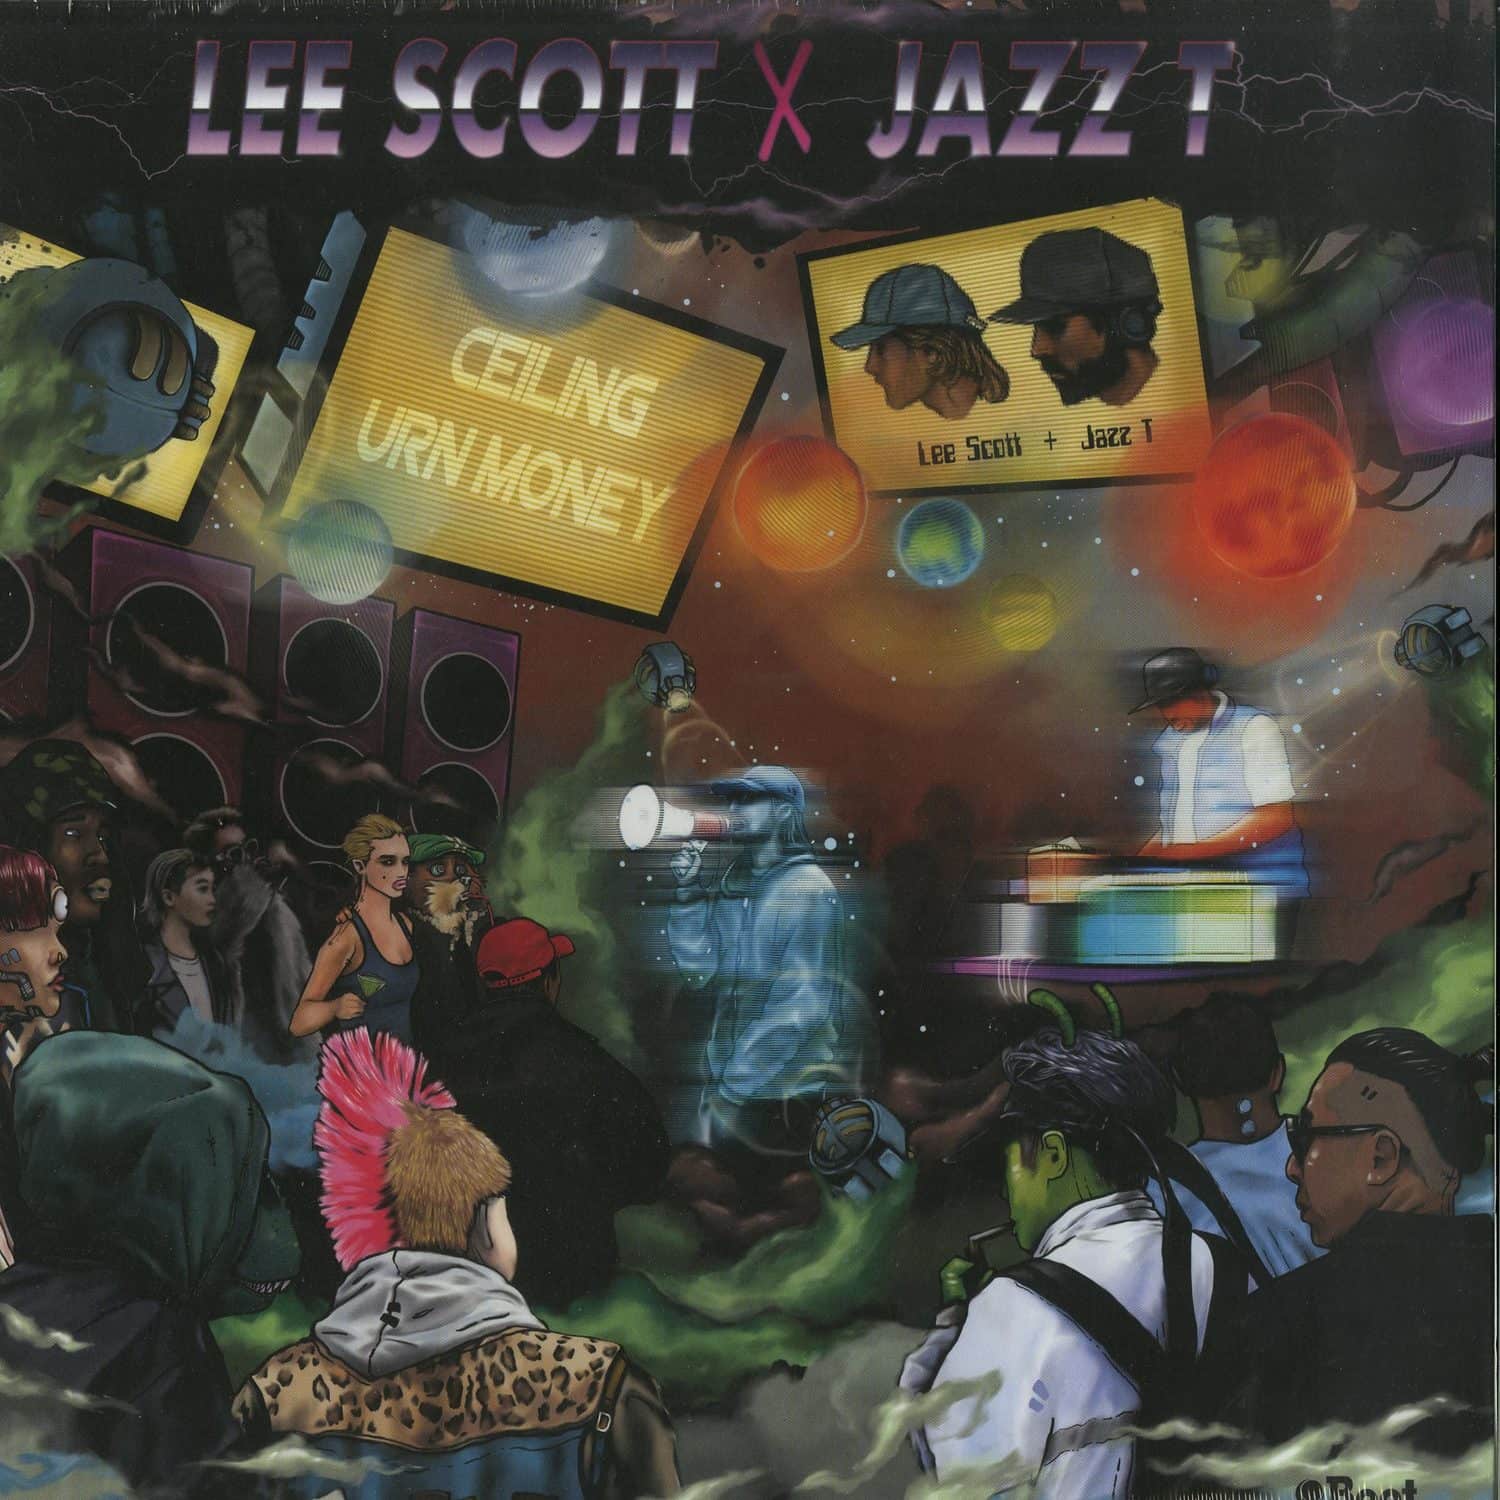 Lee Scott & Jazz T - CEILING / URN MONEY